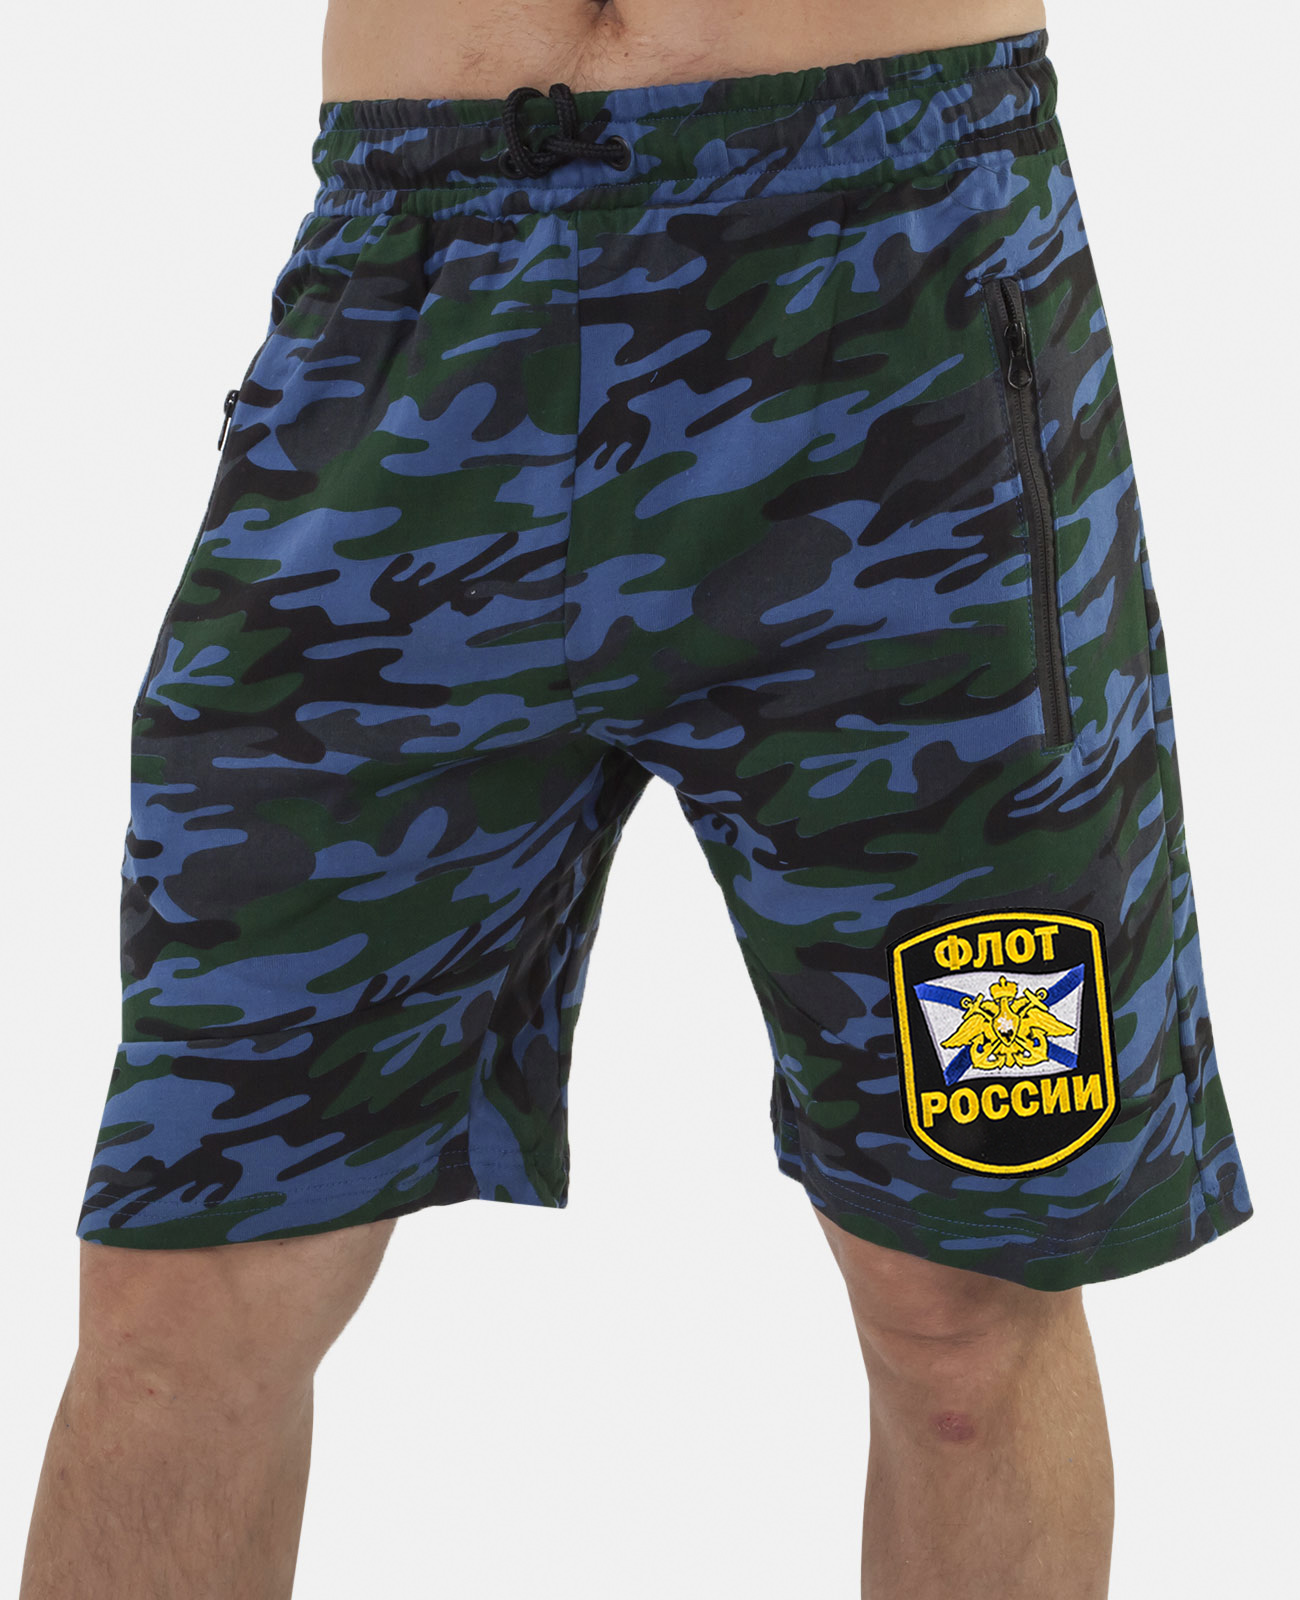 Купить мужские особенные шорты с нашивкой Флот России в подарок мужчине